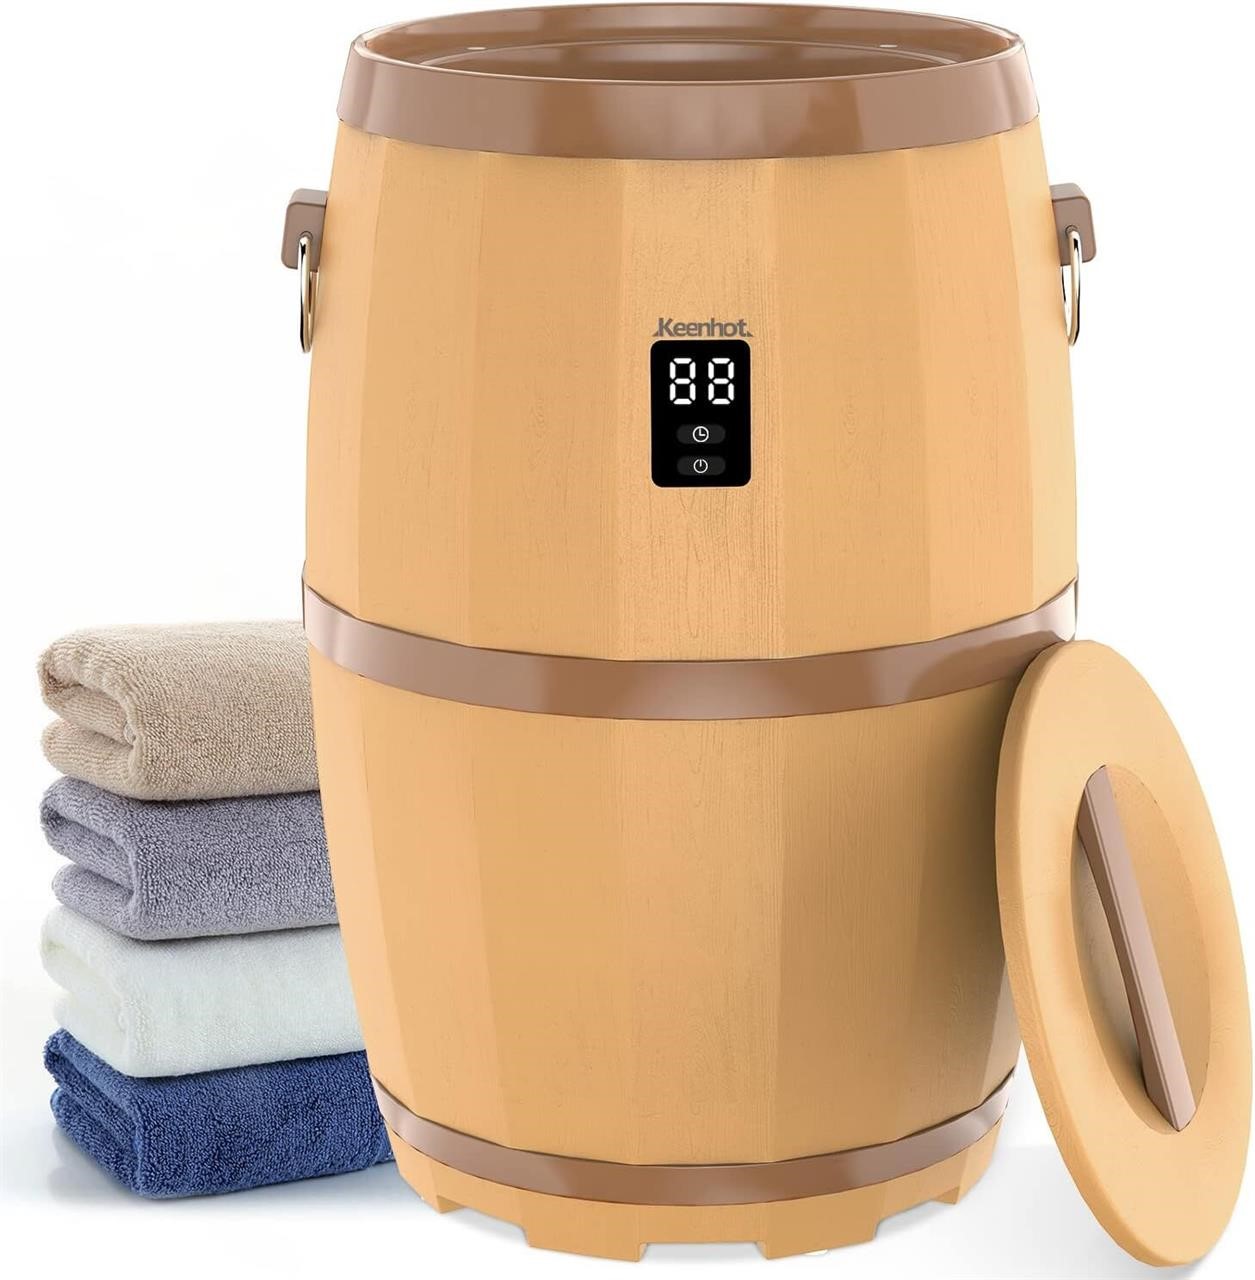 Keenhot Towel Warmer Bucket with LED Display